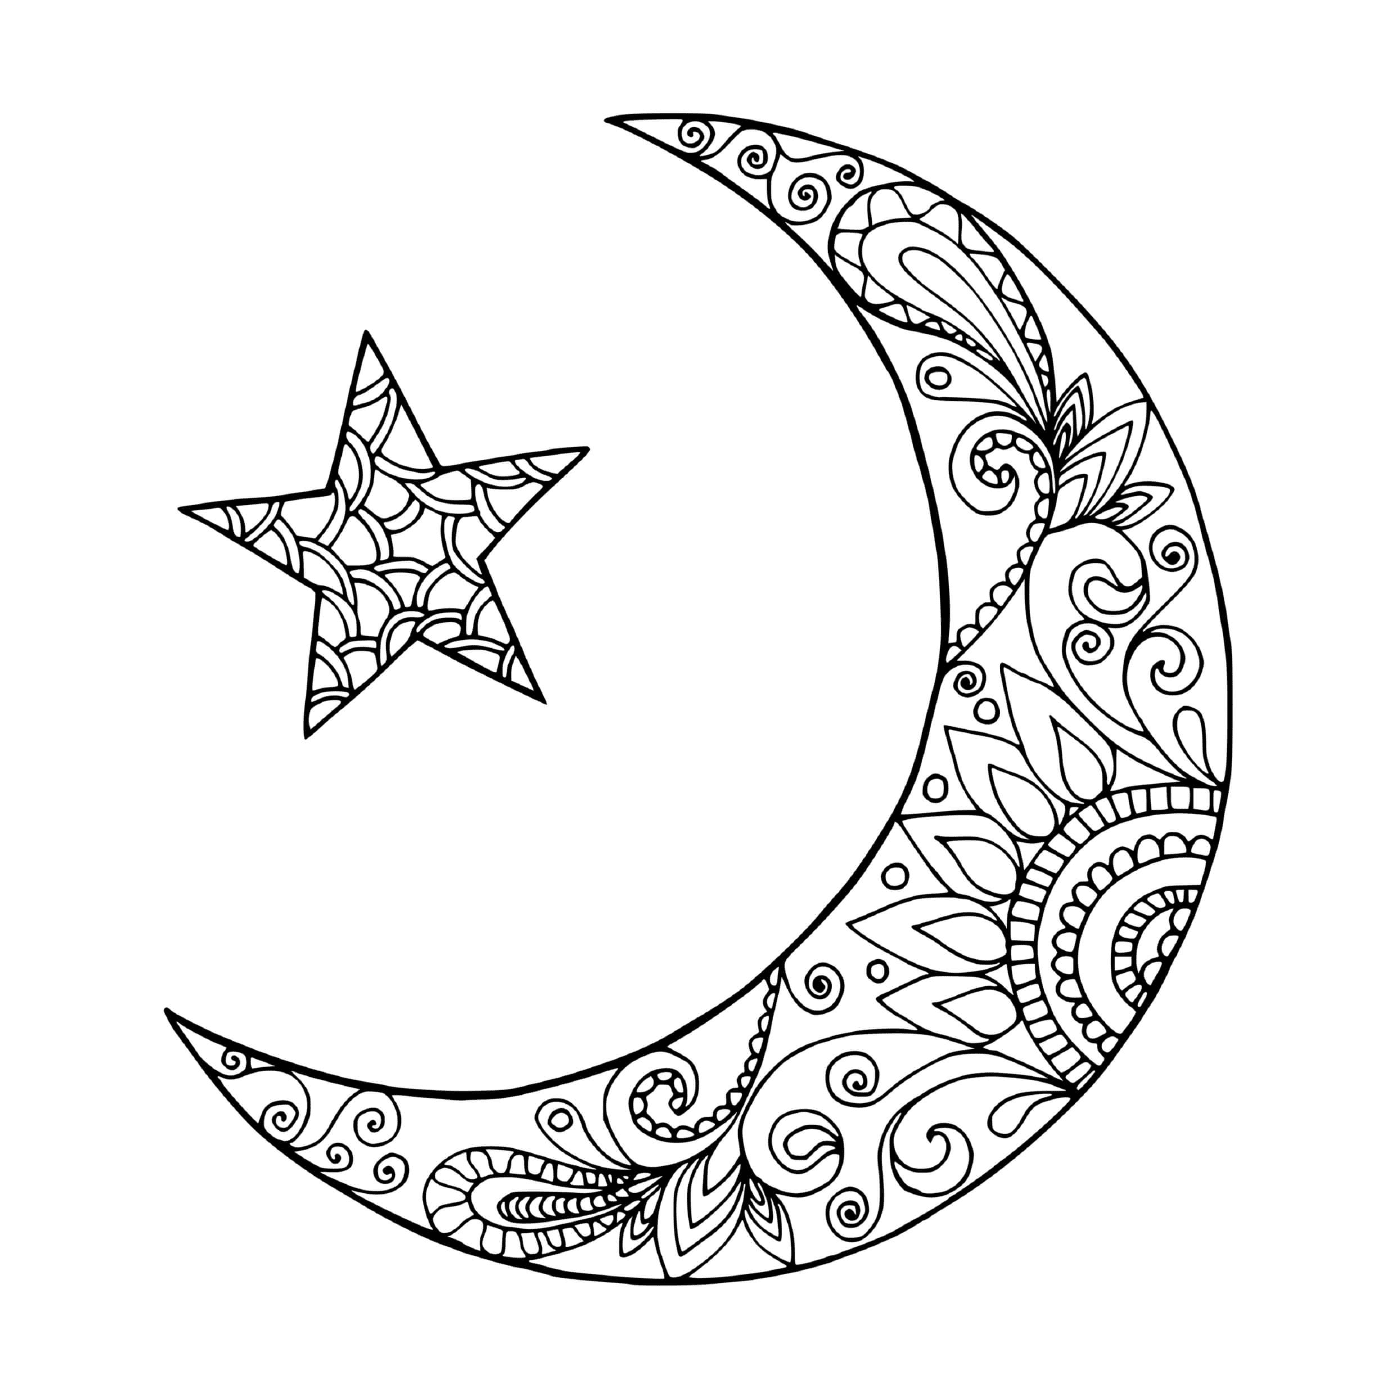  Luna en forma de media luna y estrella 